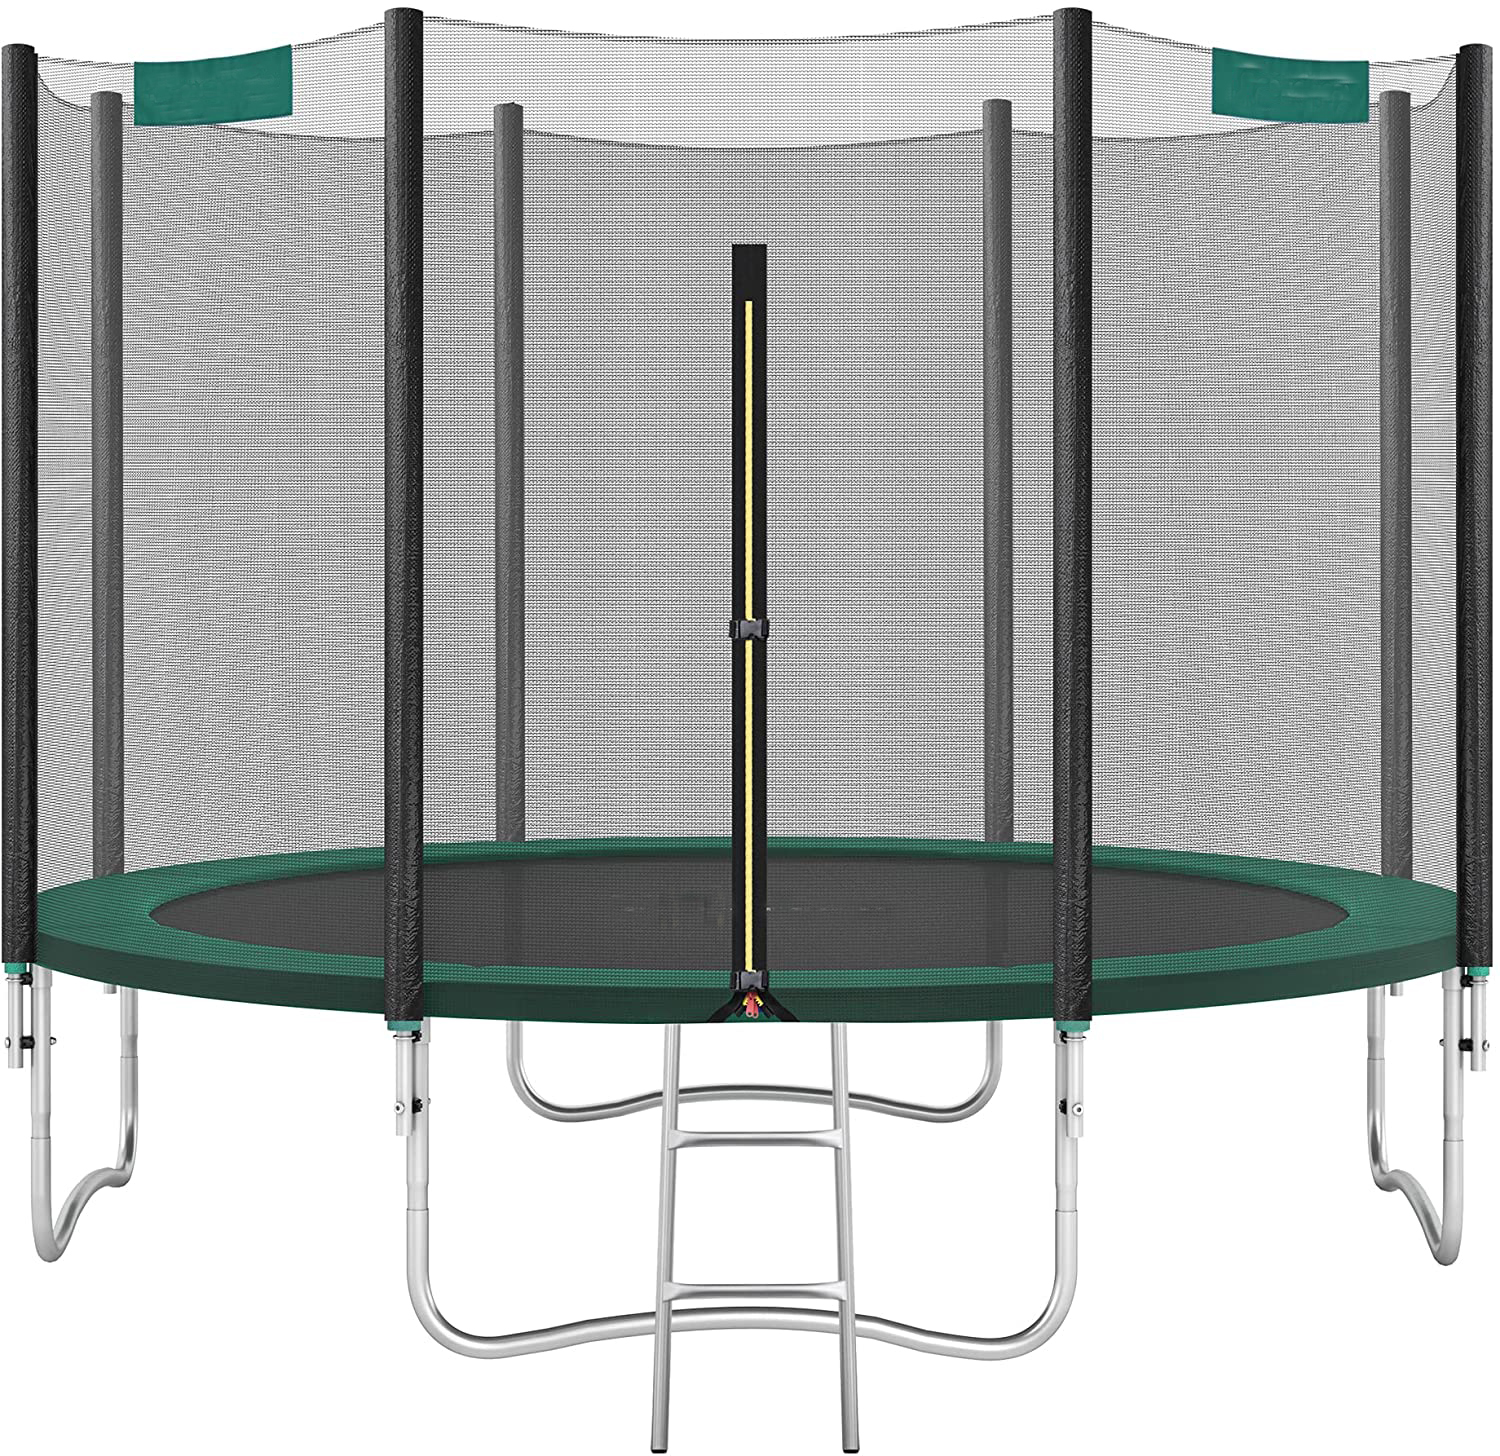 Round Garden Trampoline with Safety Net